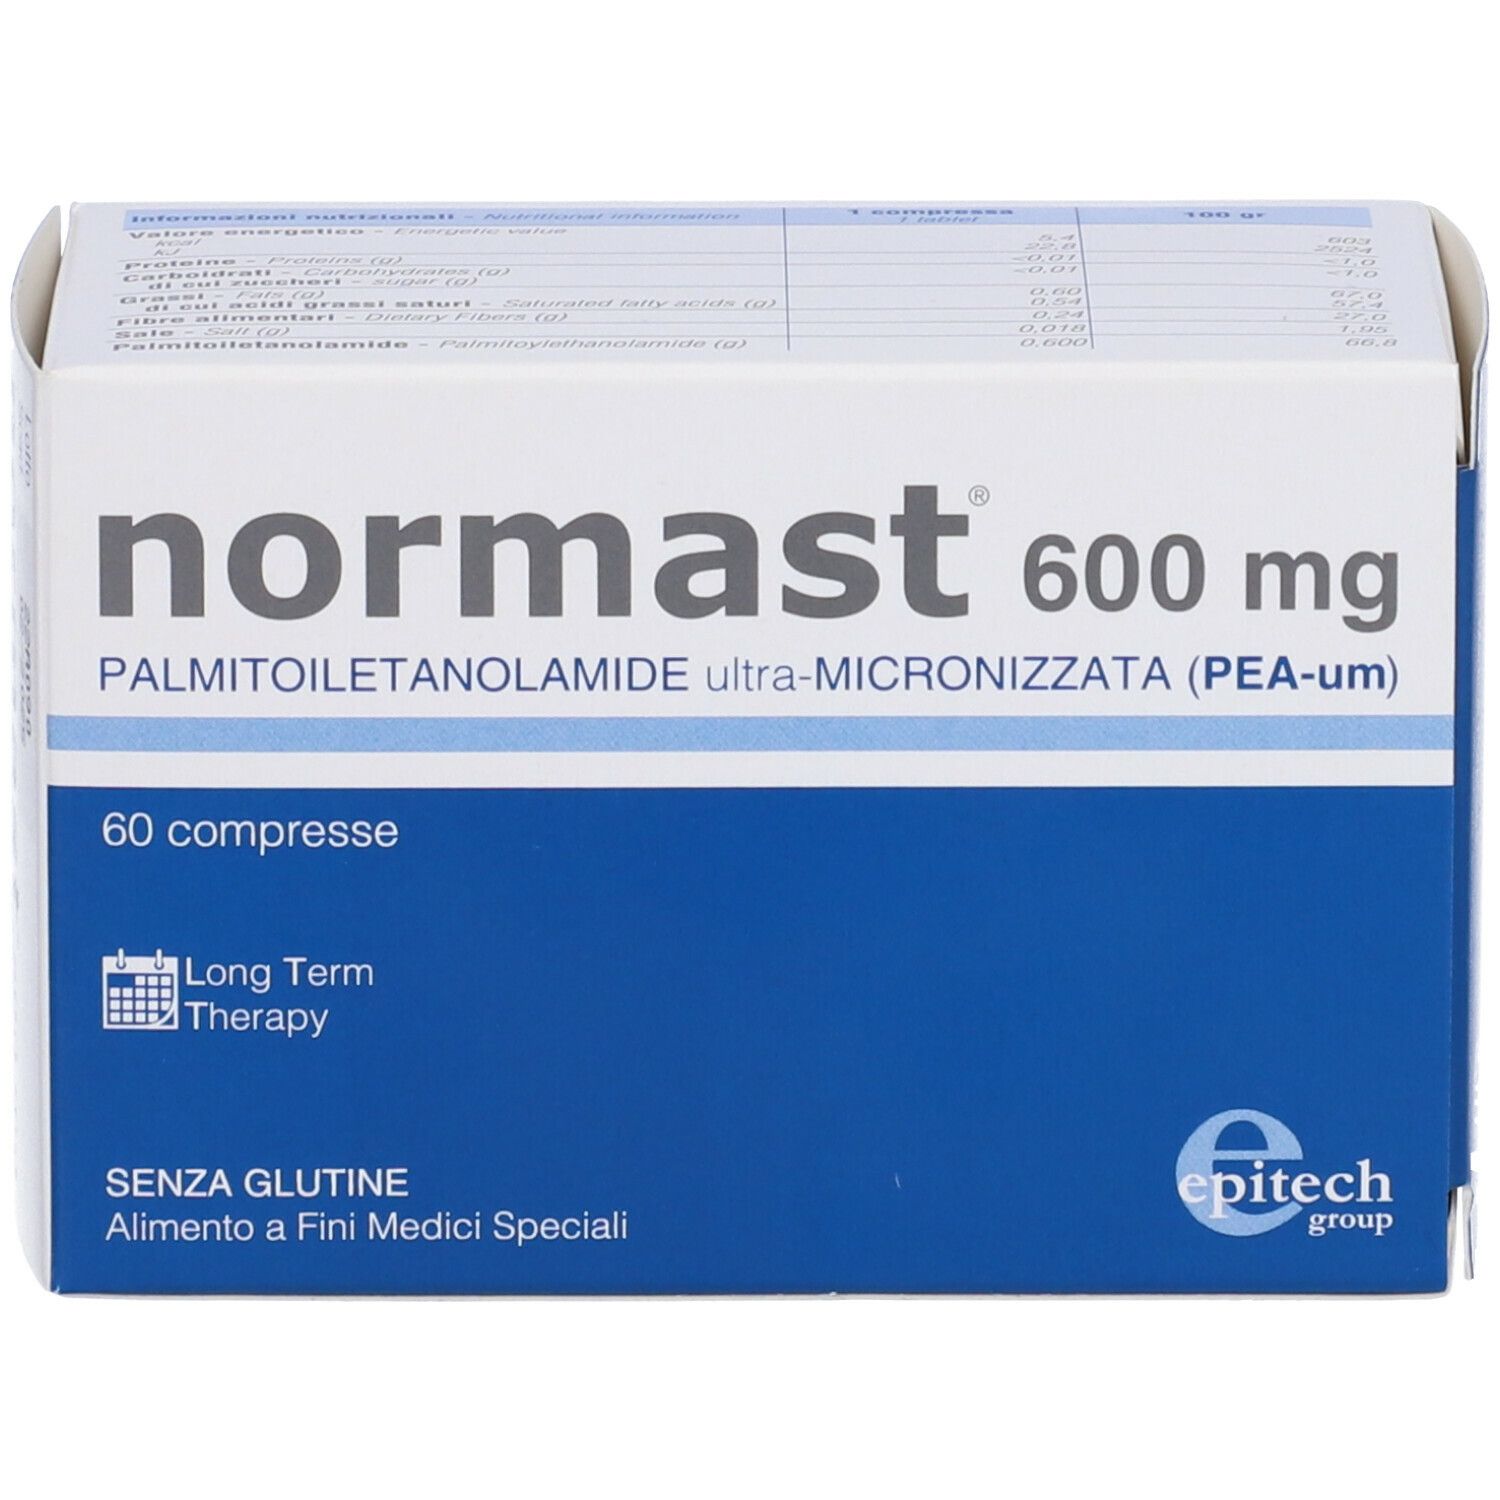 Normast® 600 mg Compresse